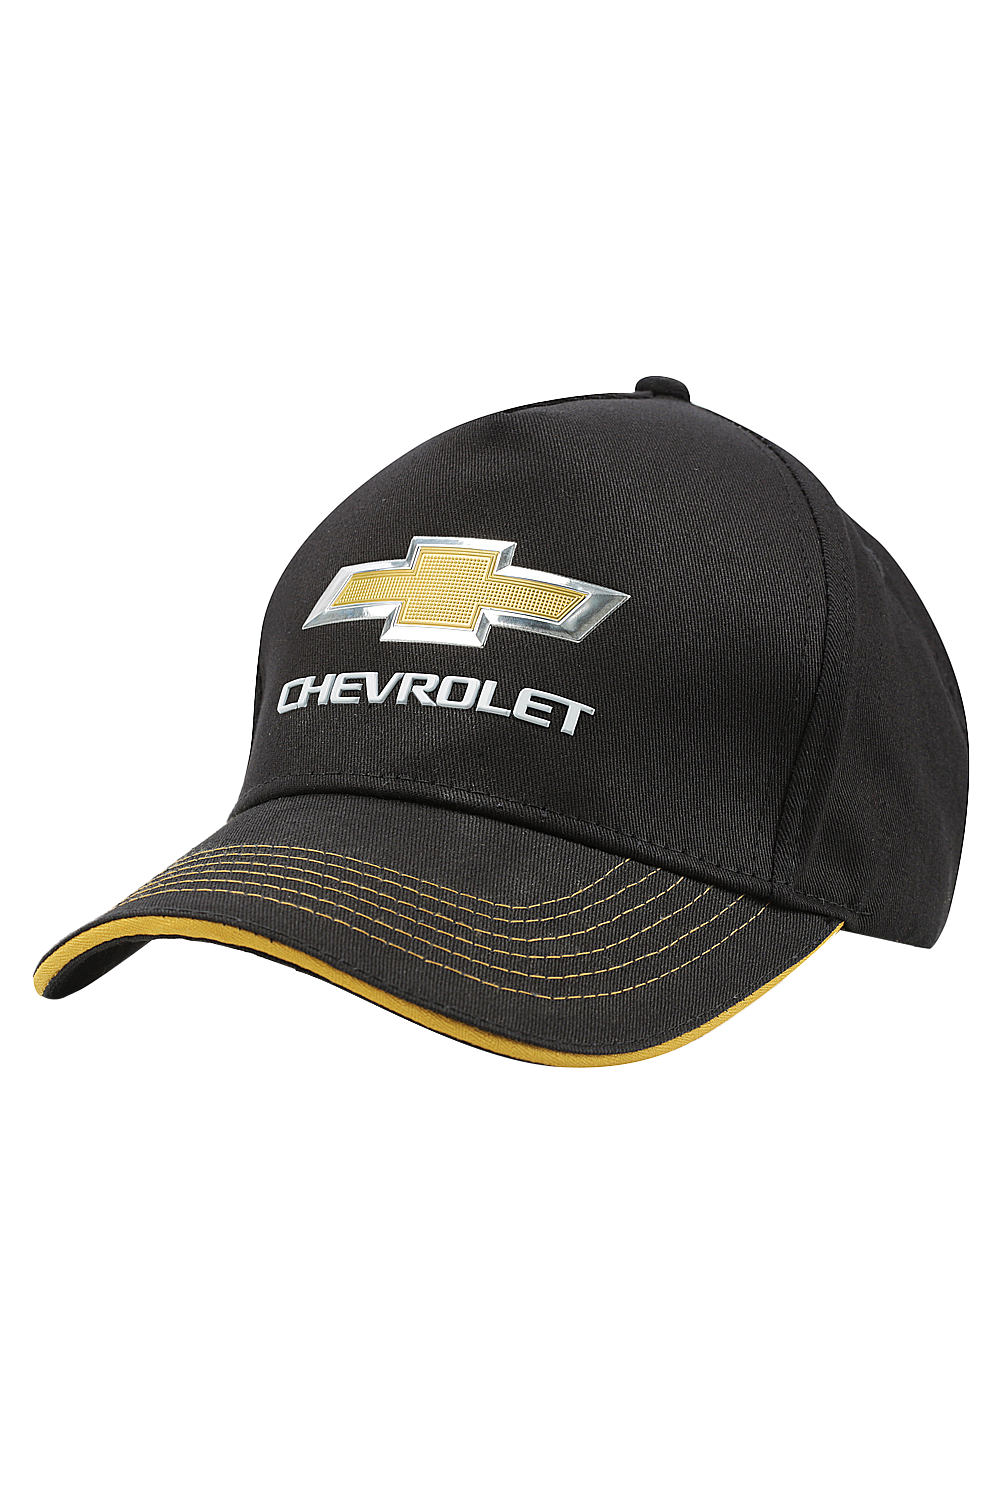 Chevrolet Cotton Blend 3D Chevy Cap Black